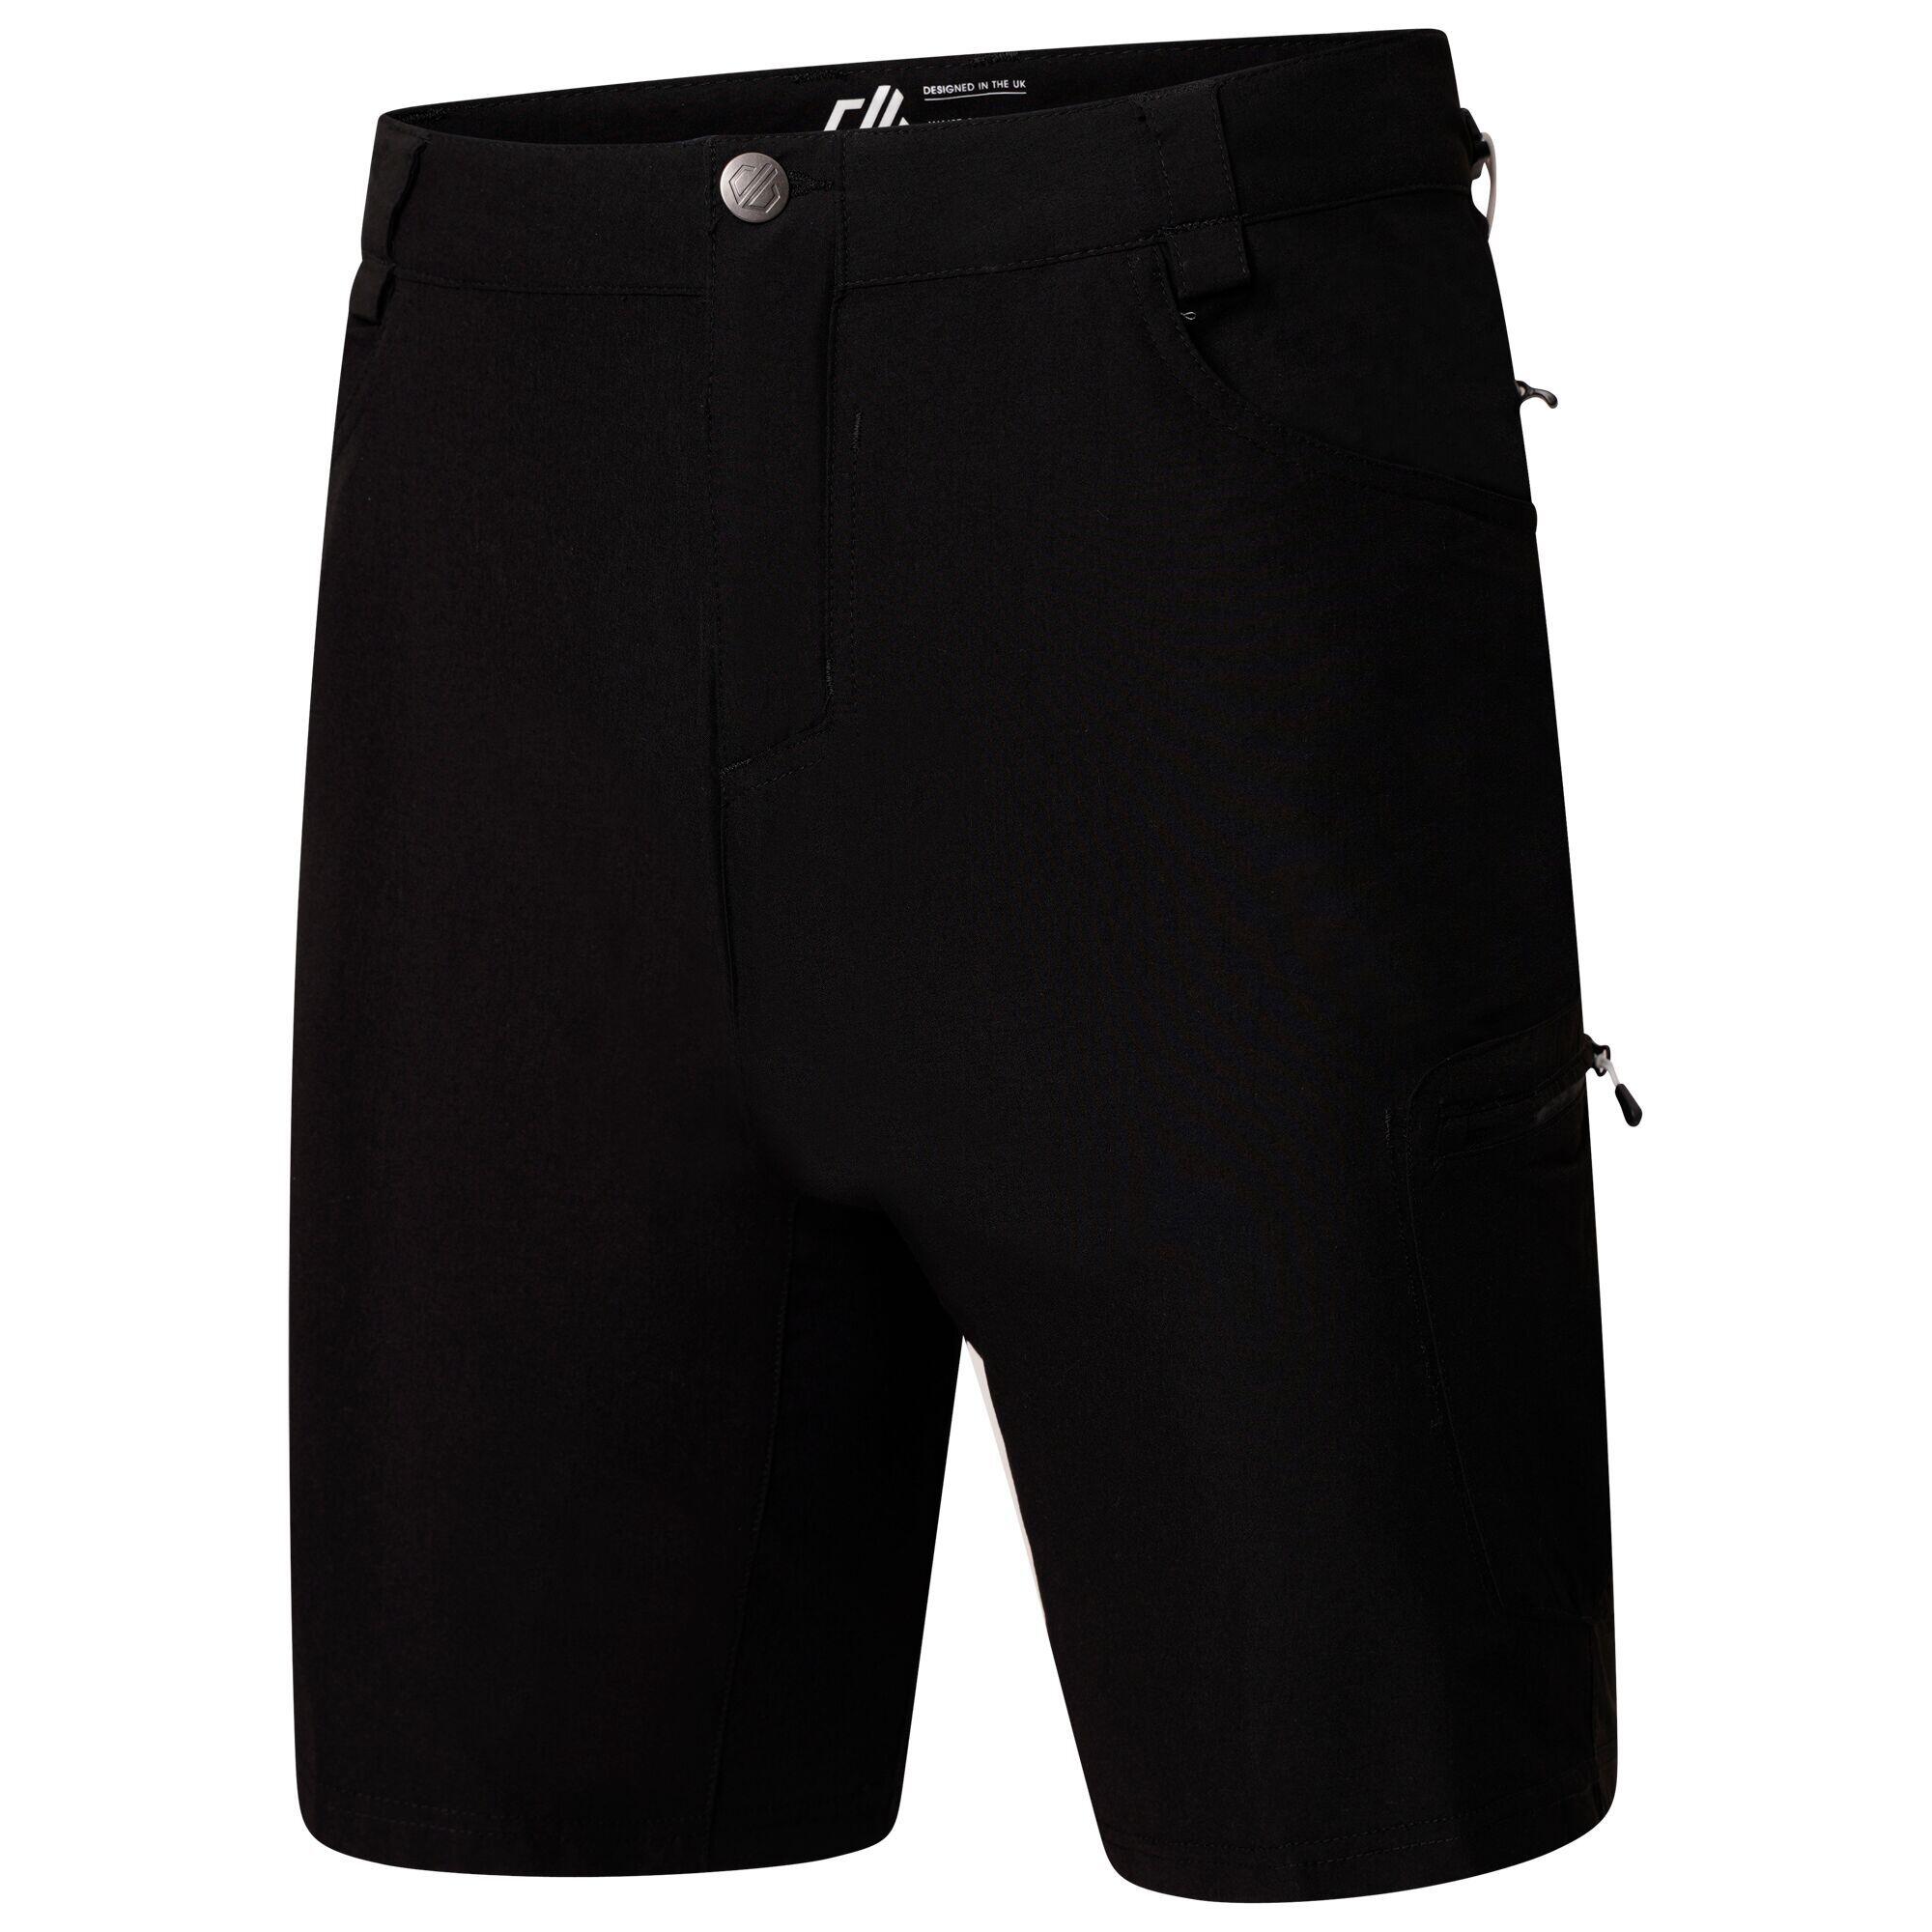 Tuned In II  Men's Walking  Shorts - Black 7/7